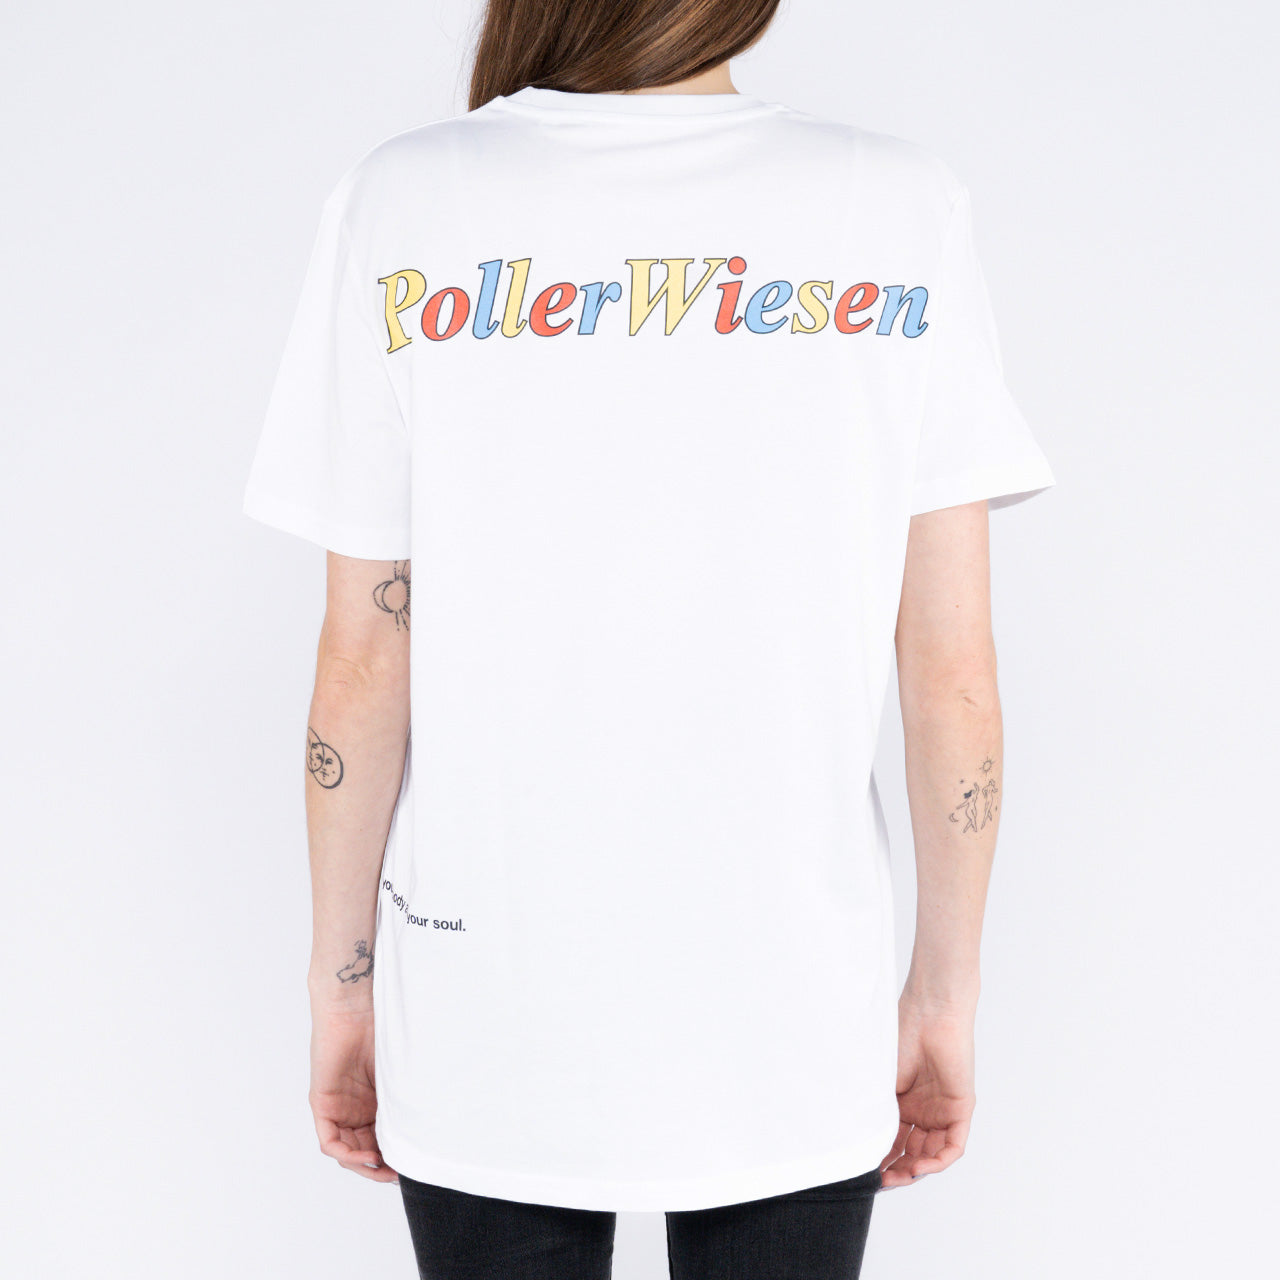 PollerWiesen - Köllefornia Sun T-Shirt